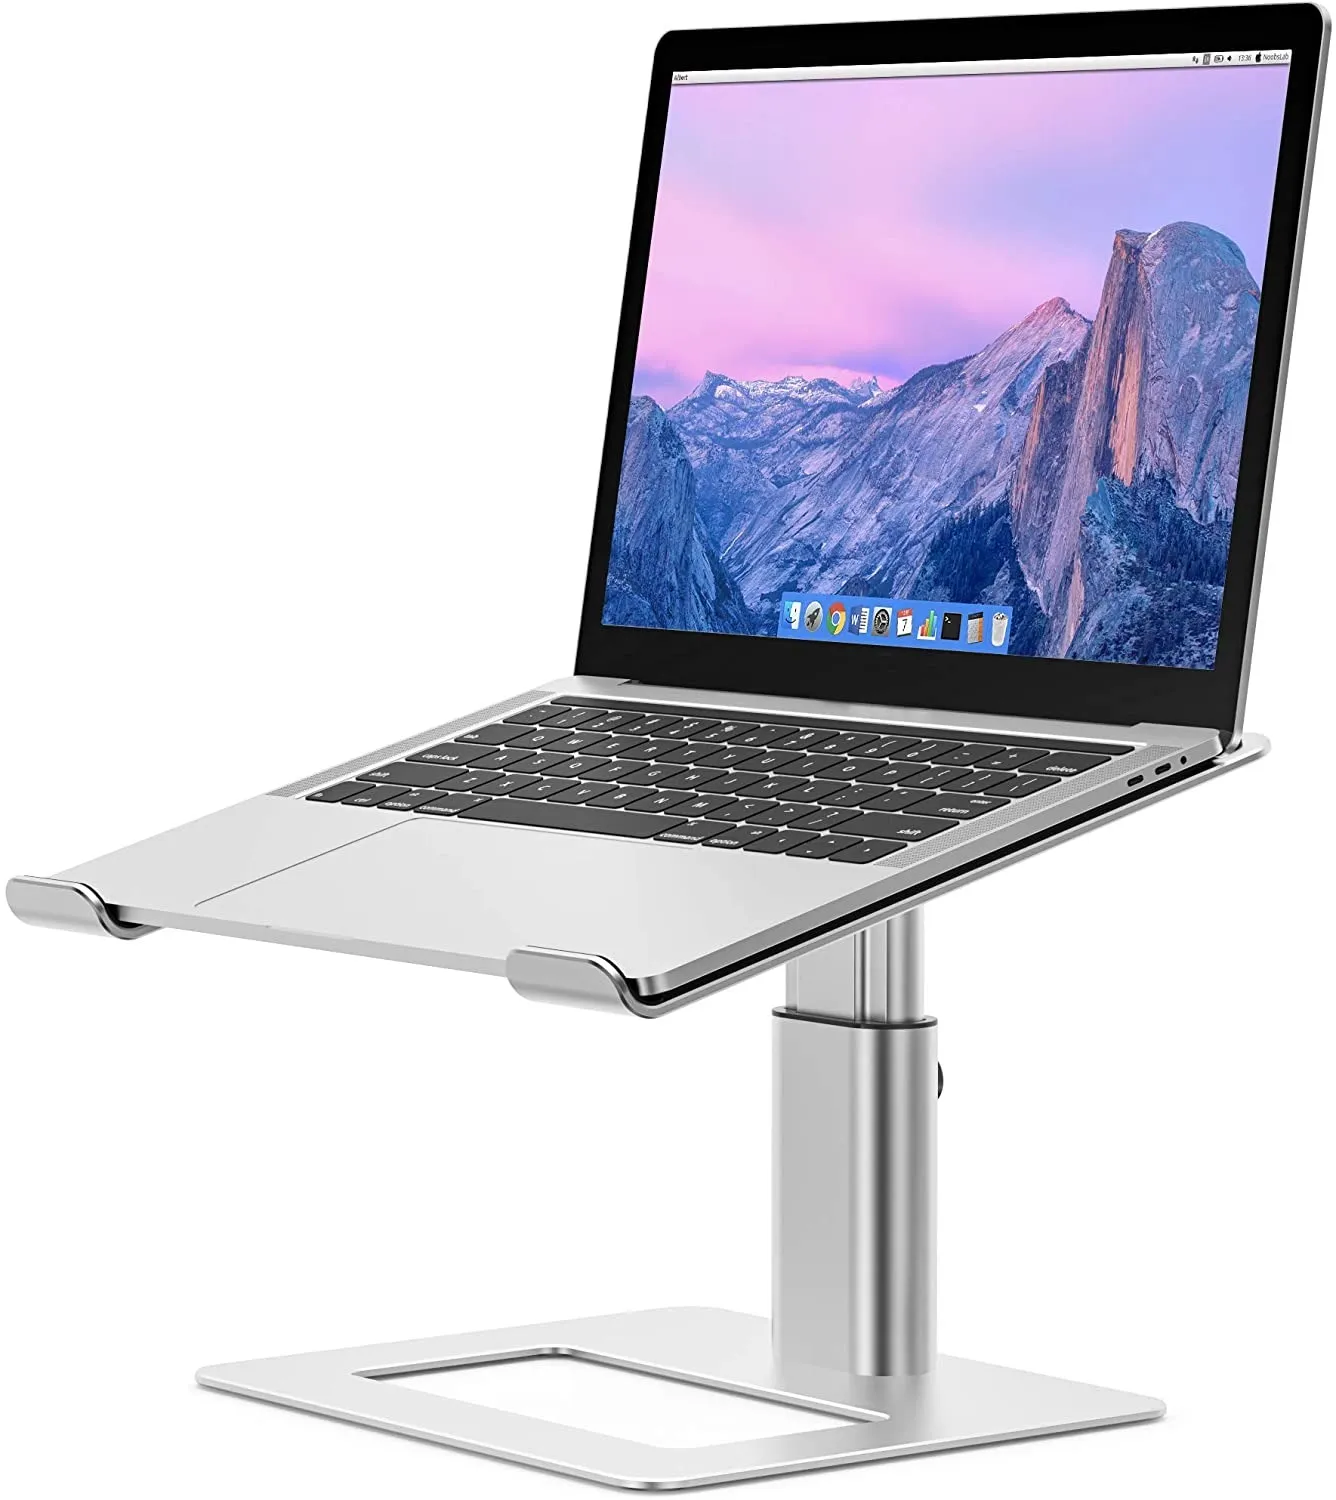 Support d'ordinateur portable en aluminium LSX3, support ergonomique réglable pour ordinateur portable, support d'ordinateur compatible avec MacBook Air Pro, Dell, HP, Lenovo More 10-15,6" ordinateurs portables